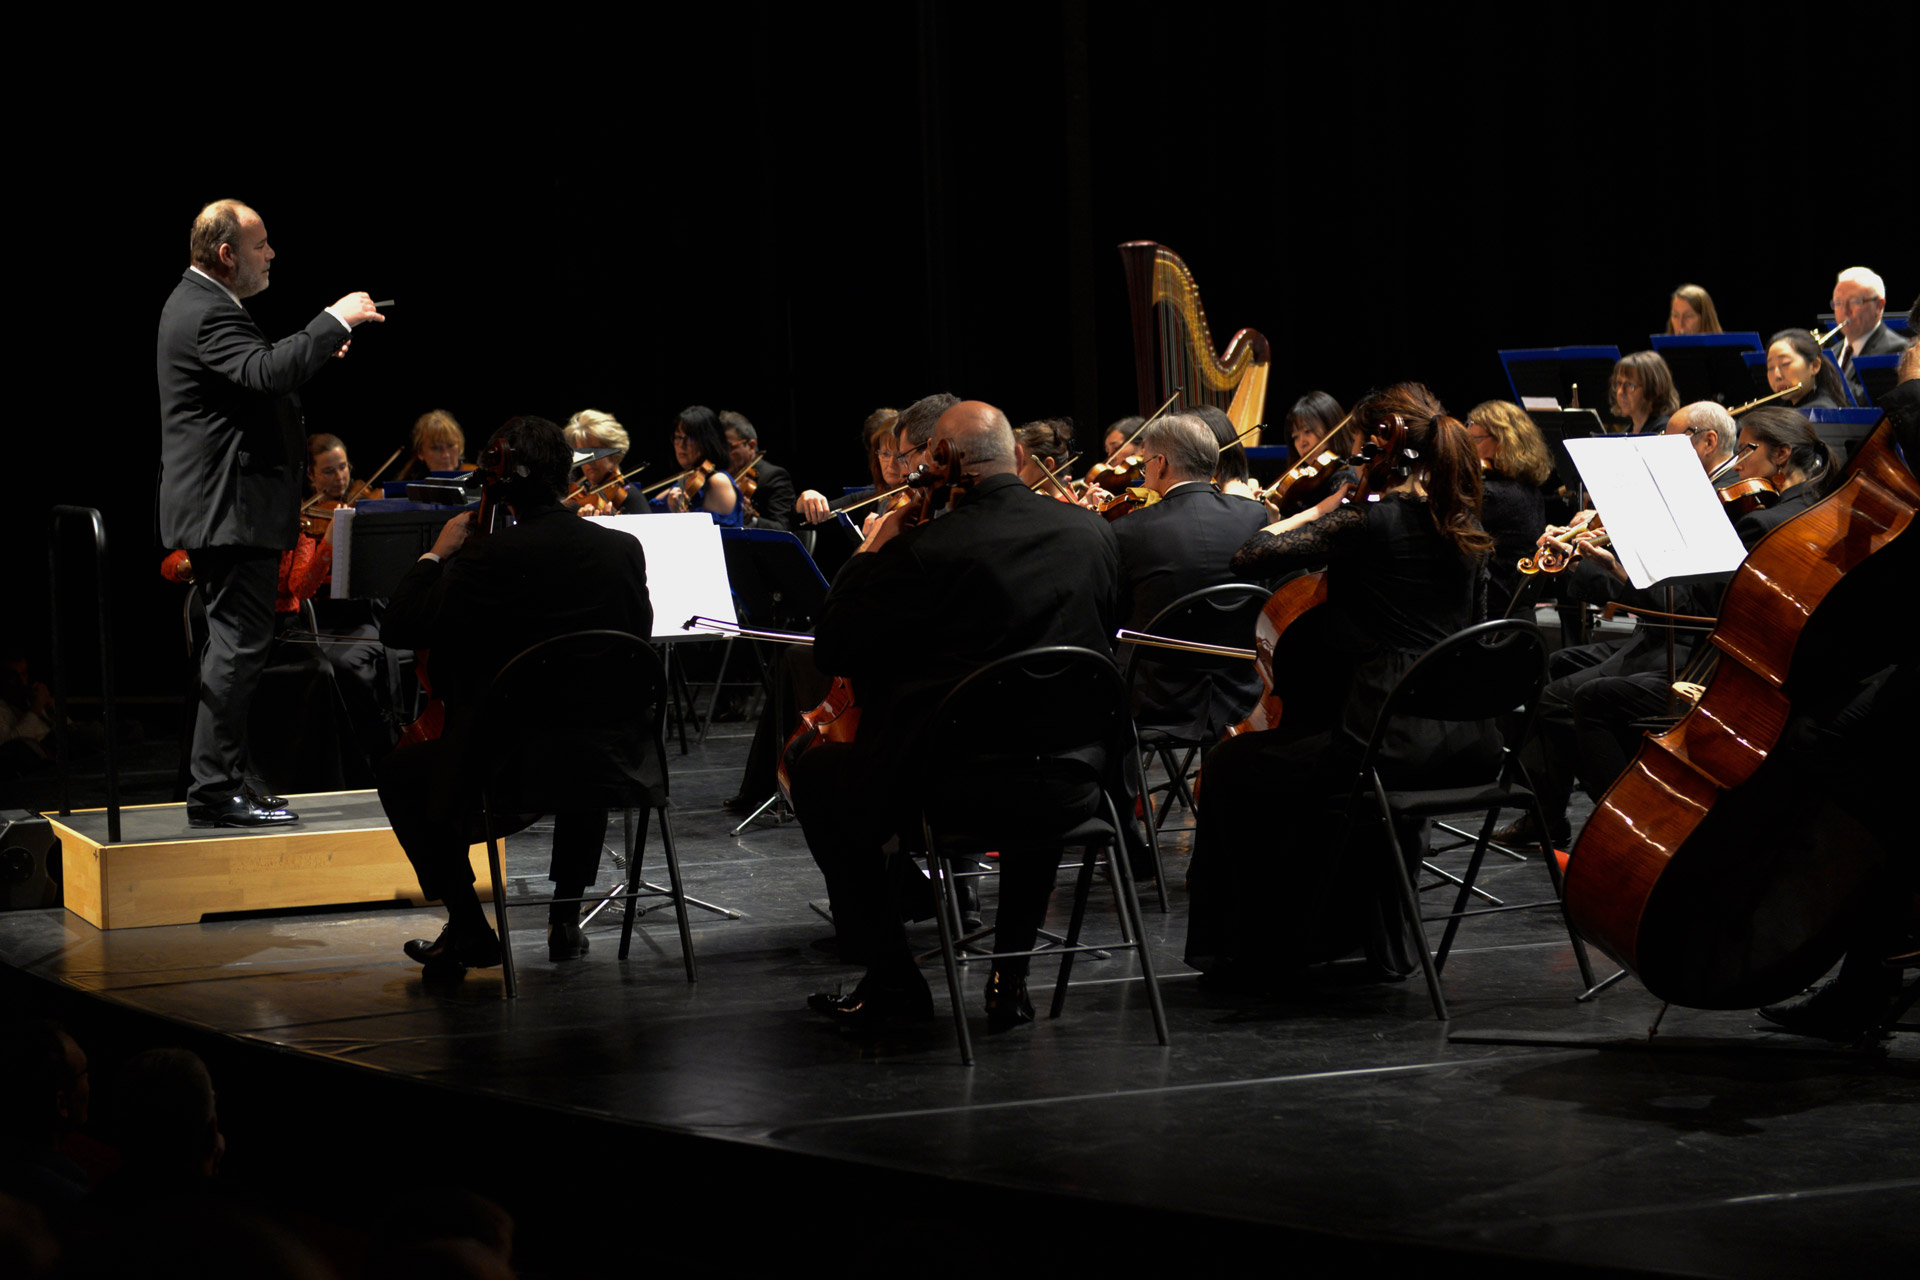 L’orchestre Avignon-Provence a su alterner moments forts et passages plus intimes, sans aucun temps mort.